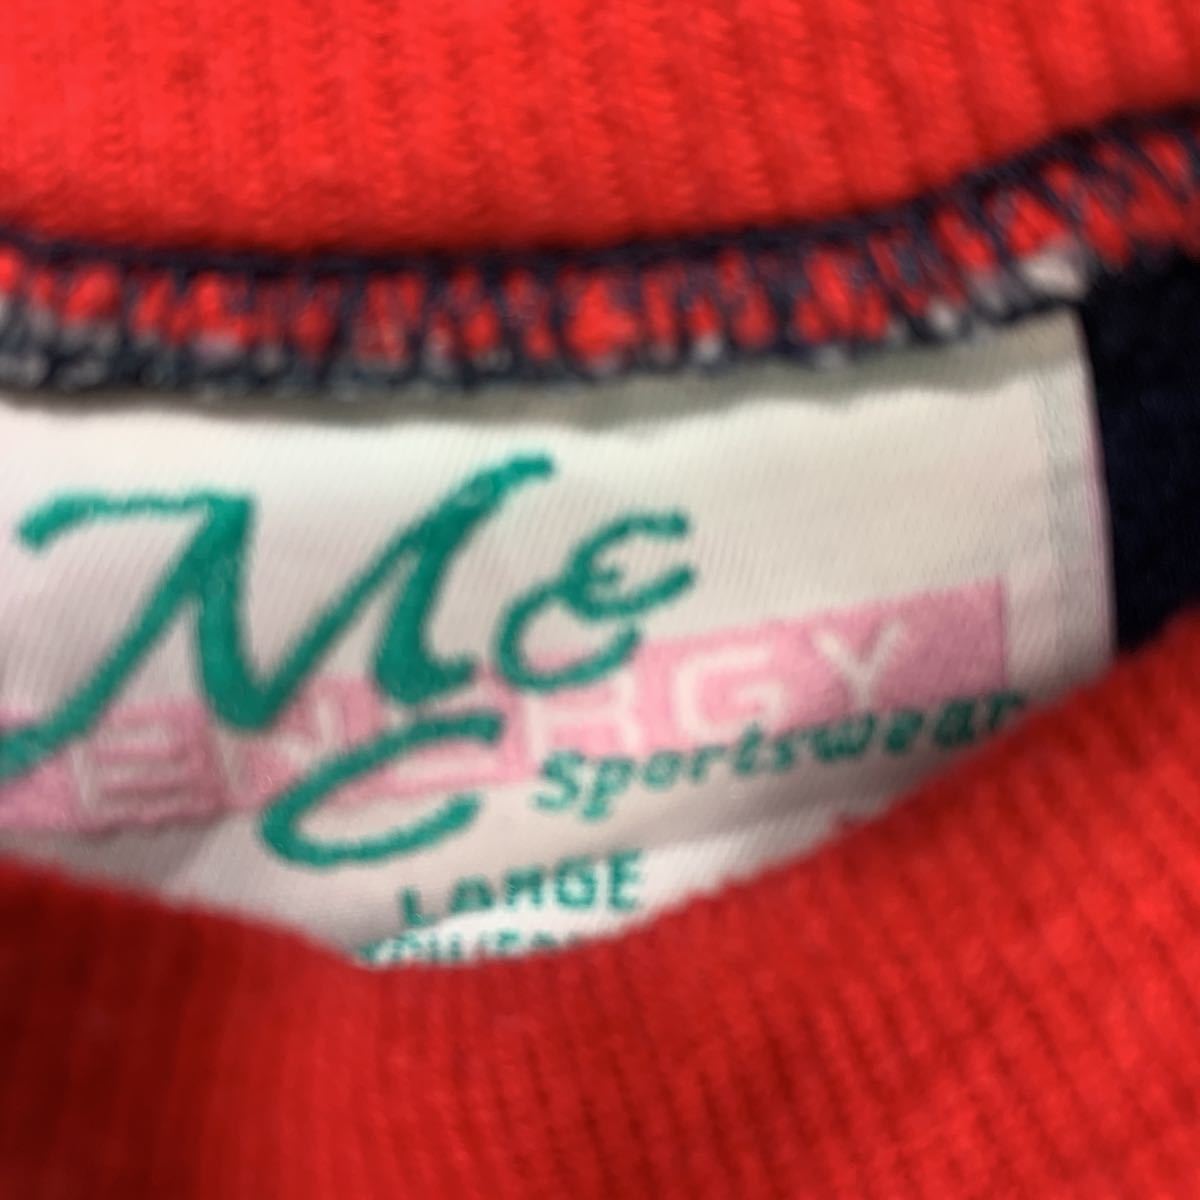  тренировочный футболка женский L размер Layered шея вышивка темно-синий красный б/у одежда . America скупка t2212-3322